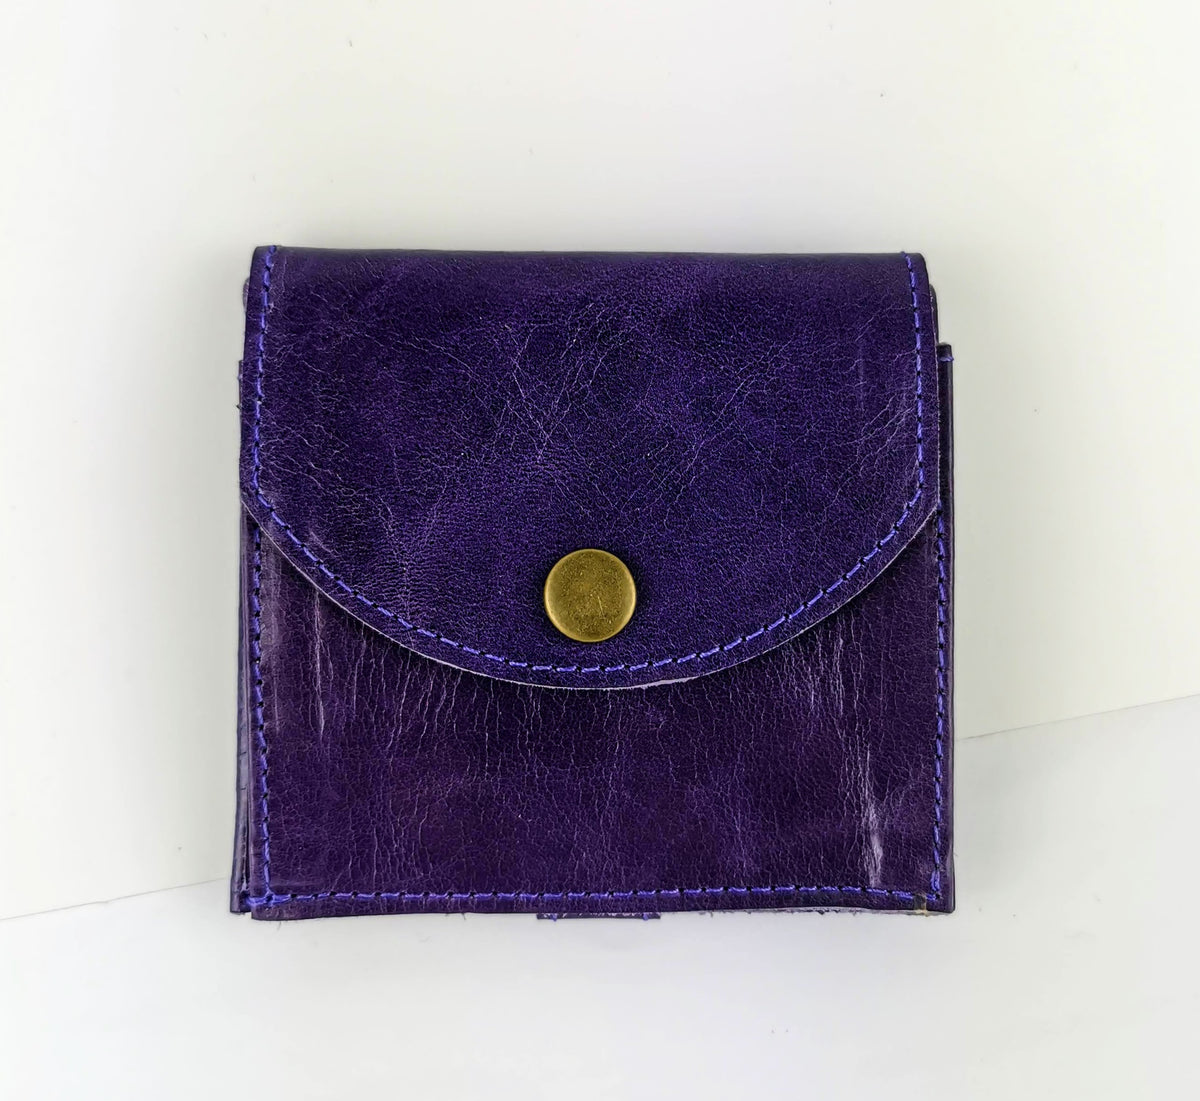 Ison wallet in purple